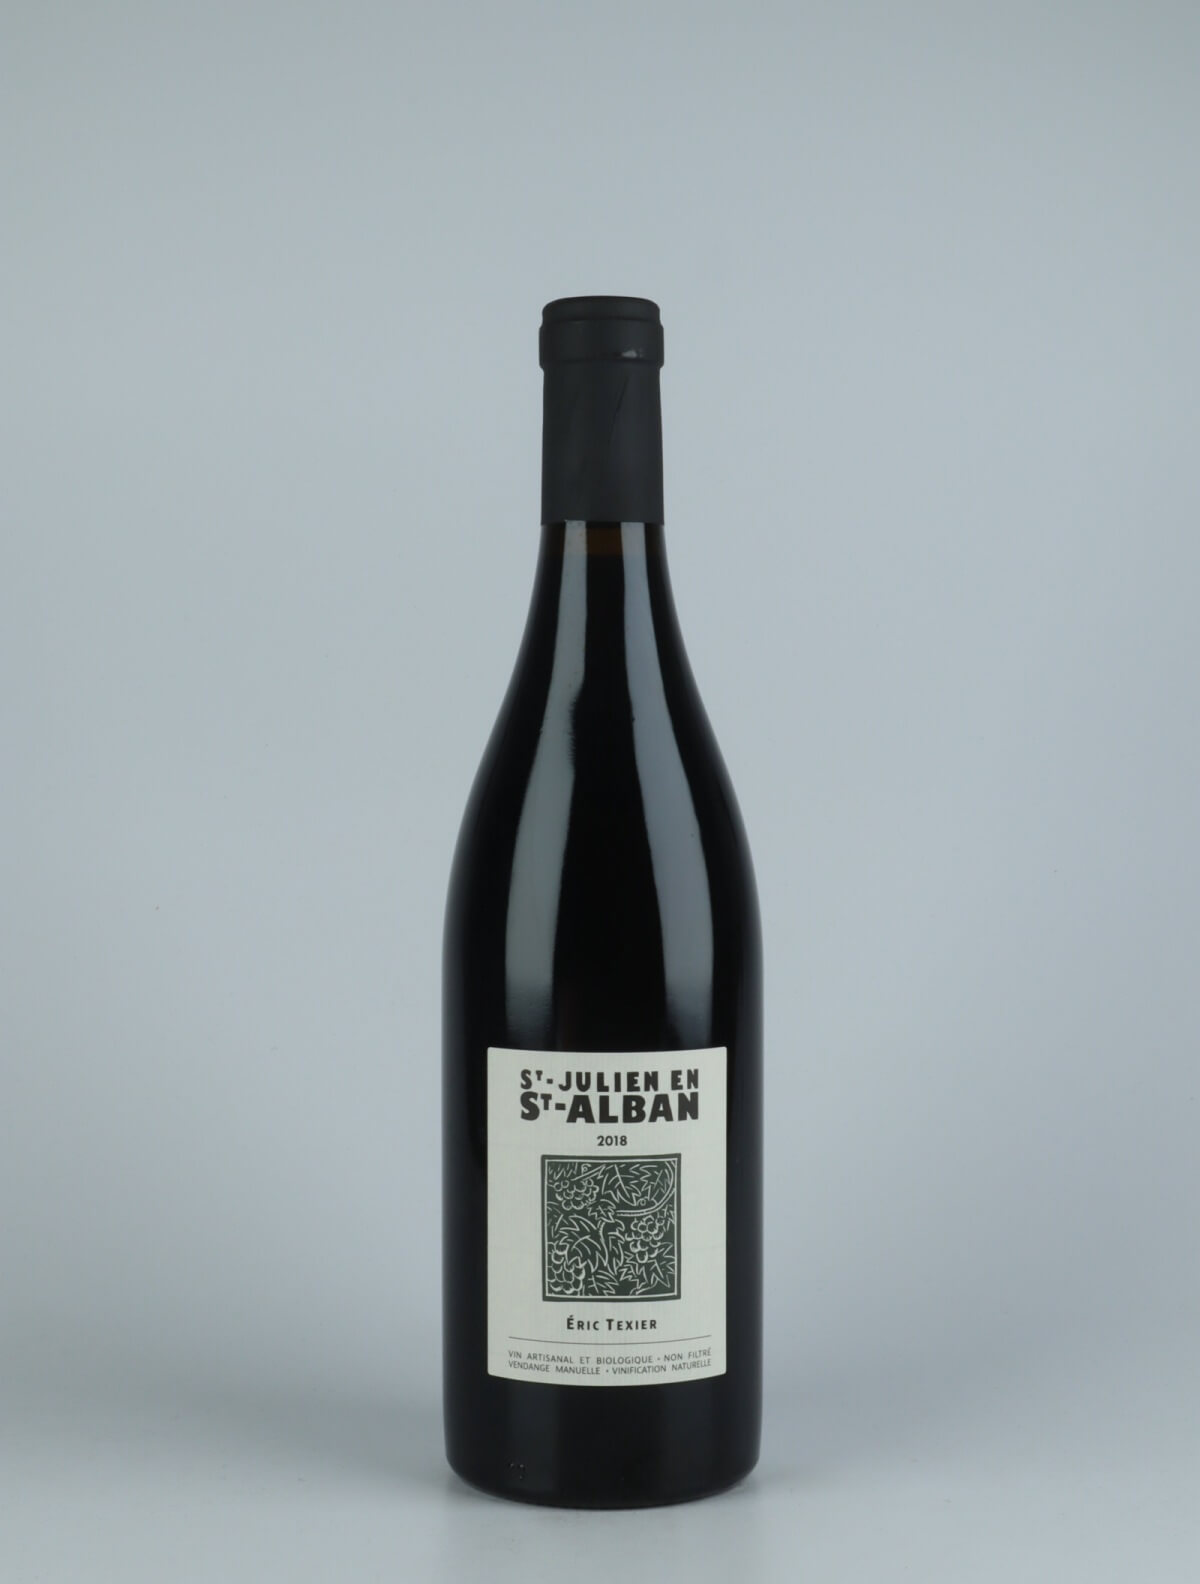 A bottle 2018 St Julien en St Alban Red wine from Eric Texier, Rhône in France